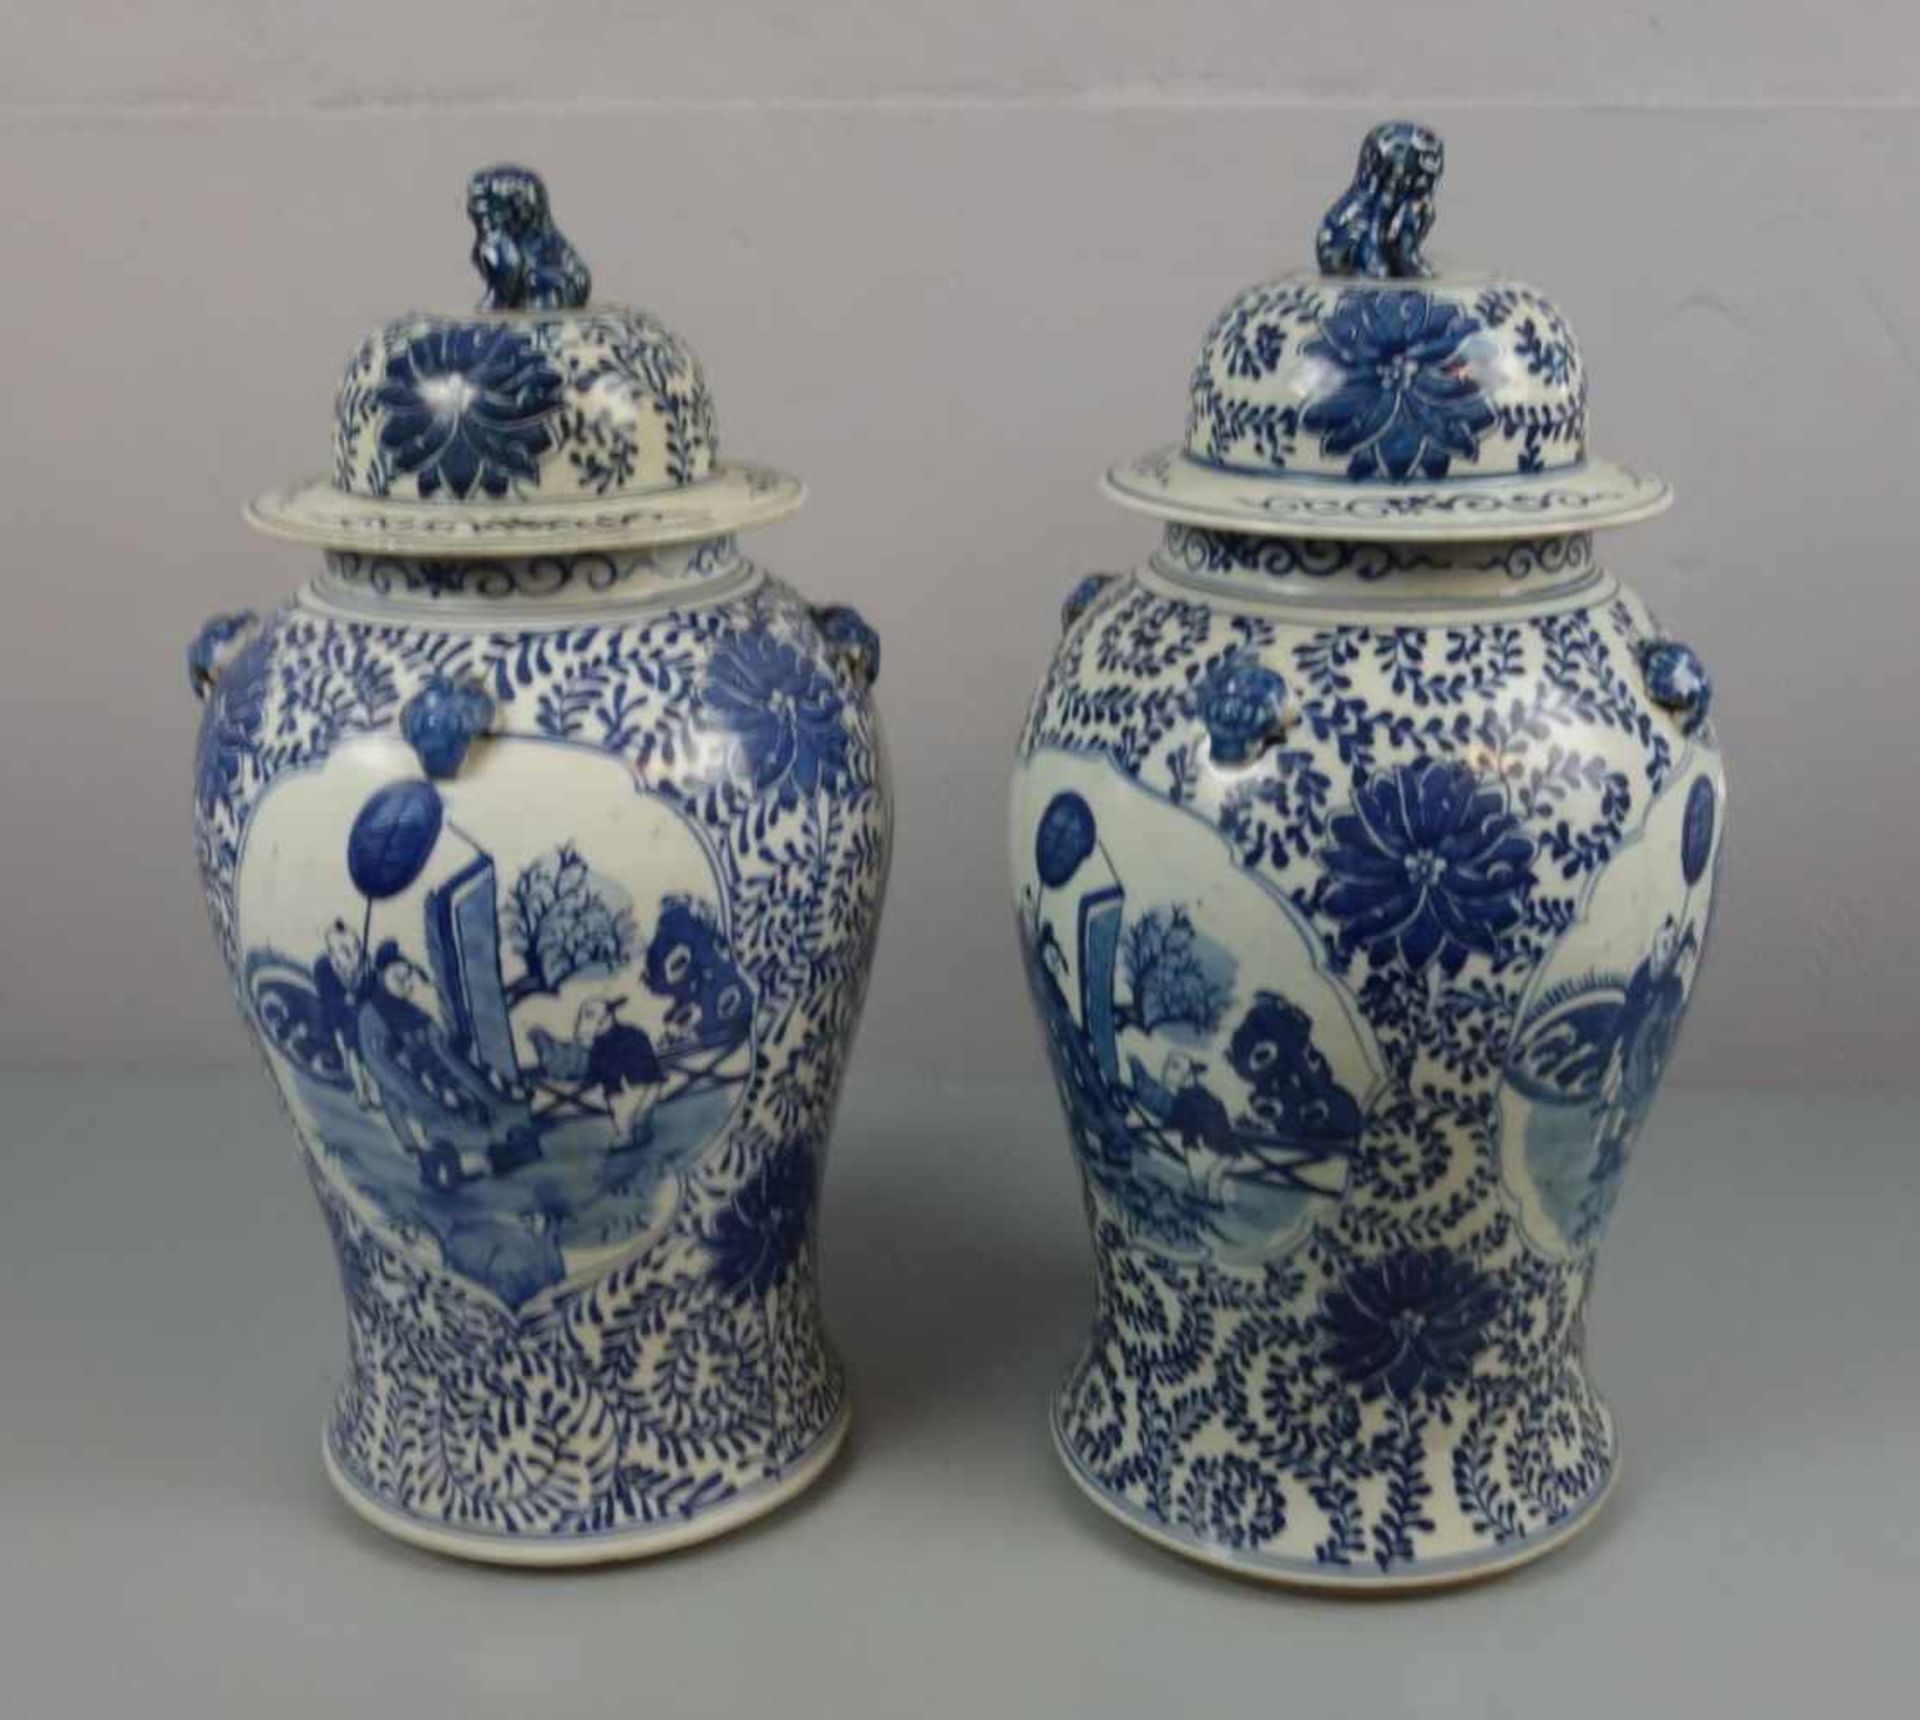 PAAR CHINESISCHE DECKELVASEN / pair of chinese vases, late Qing dynasty, Porzellan (ungemarkt), - Image 3 of 5